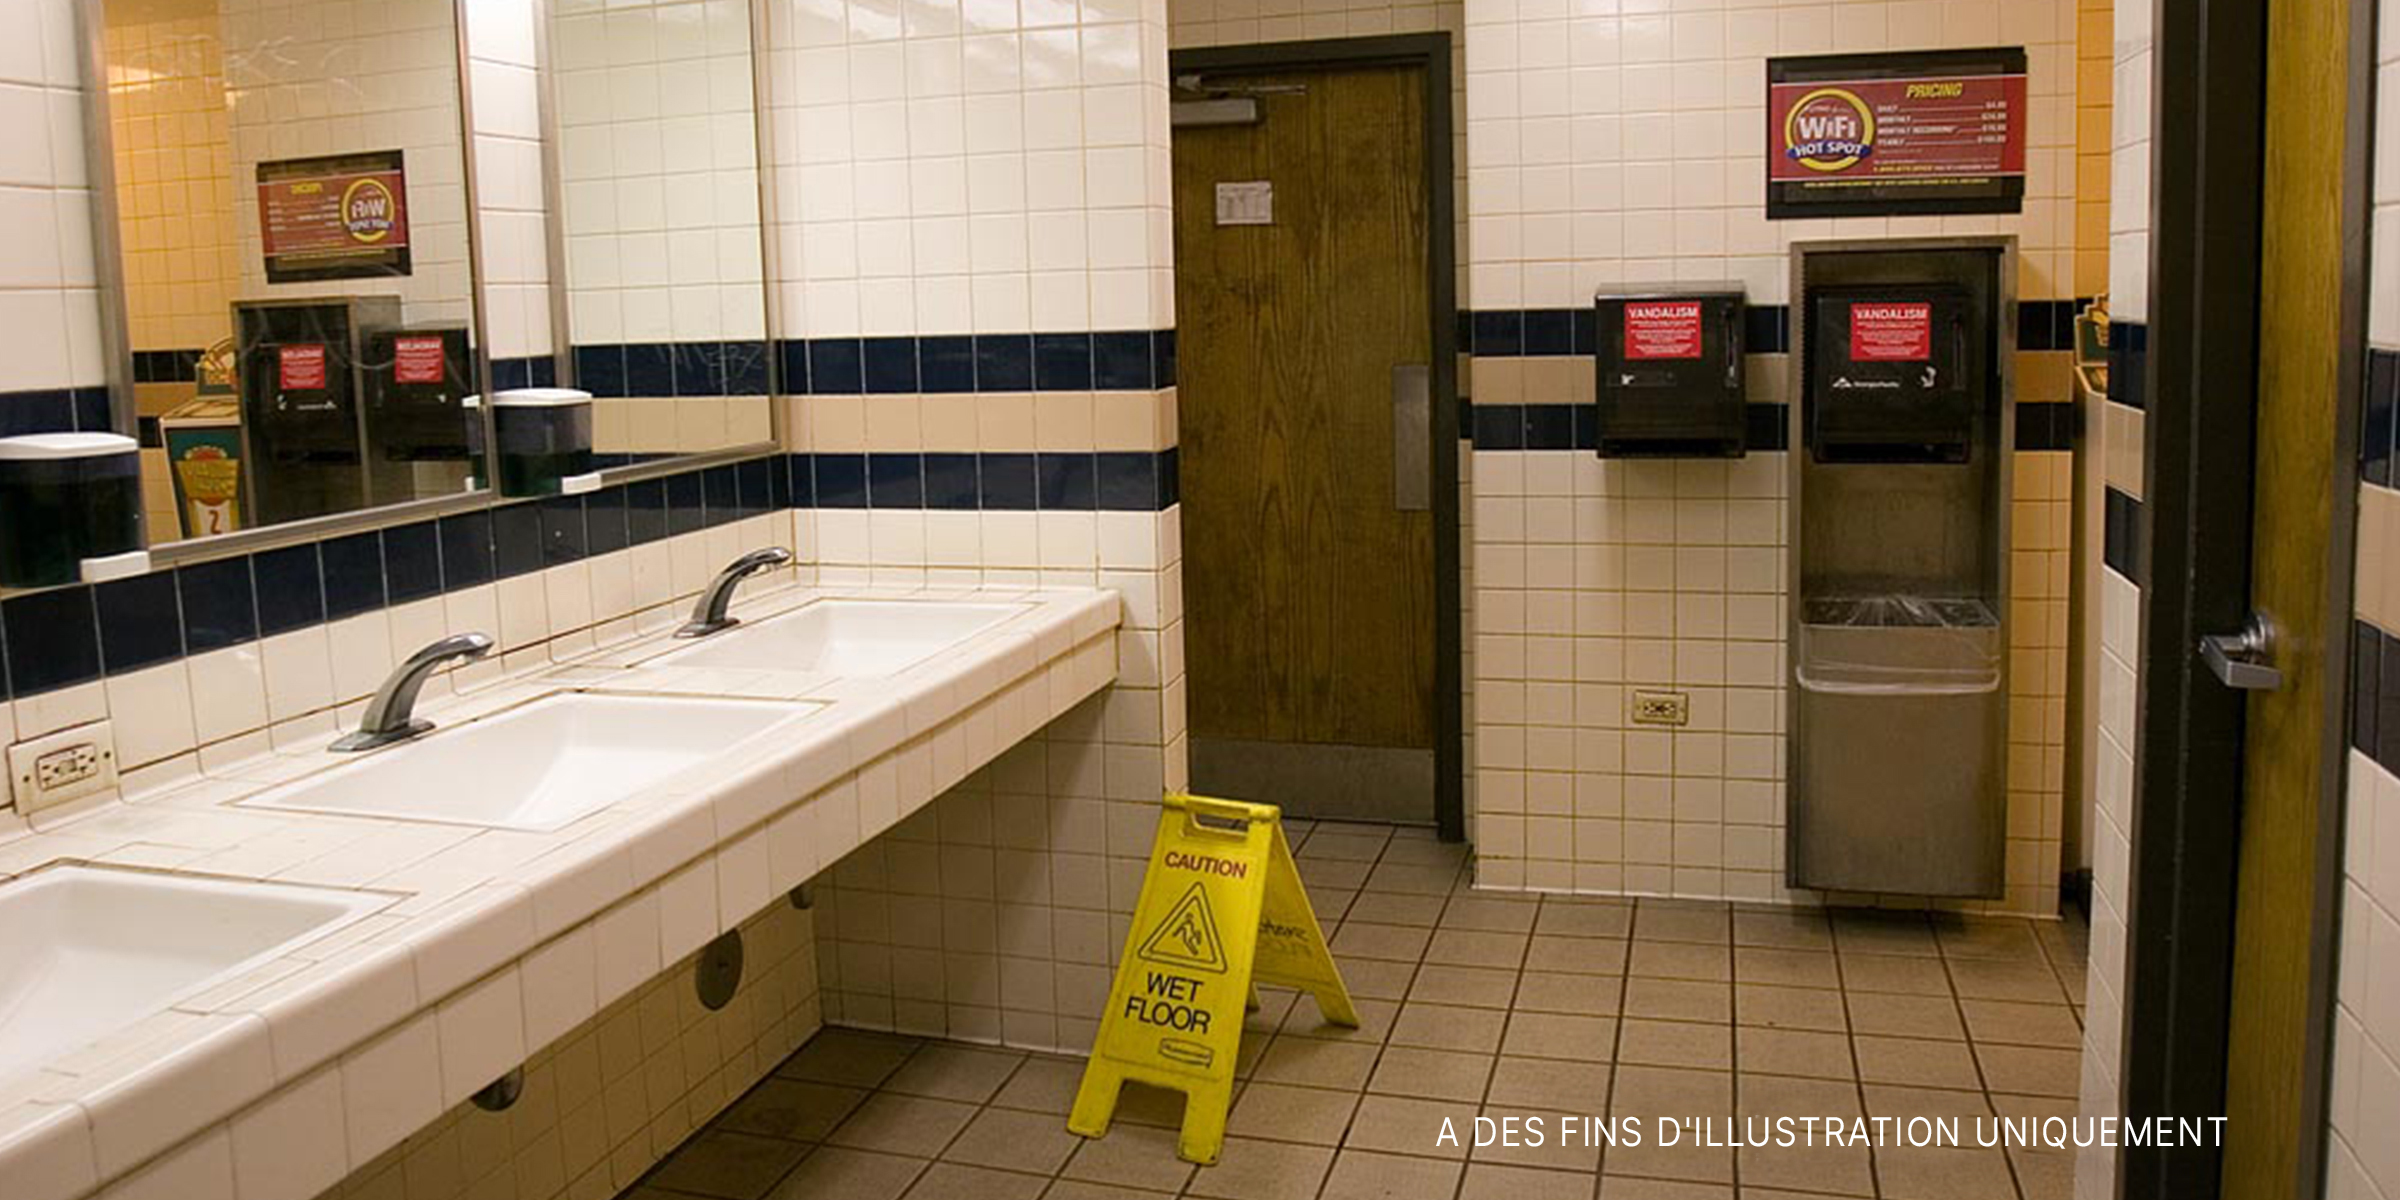 Des toilettes publiques. | Source : Flickr / pointnshoot (CC BY 2.0)